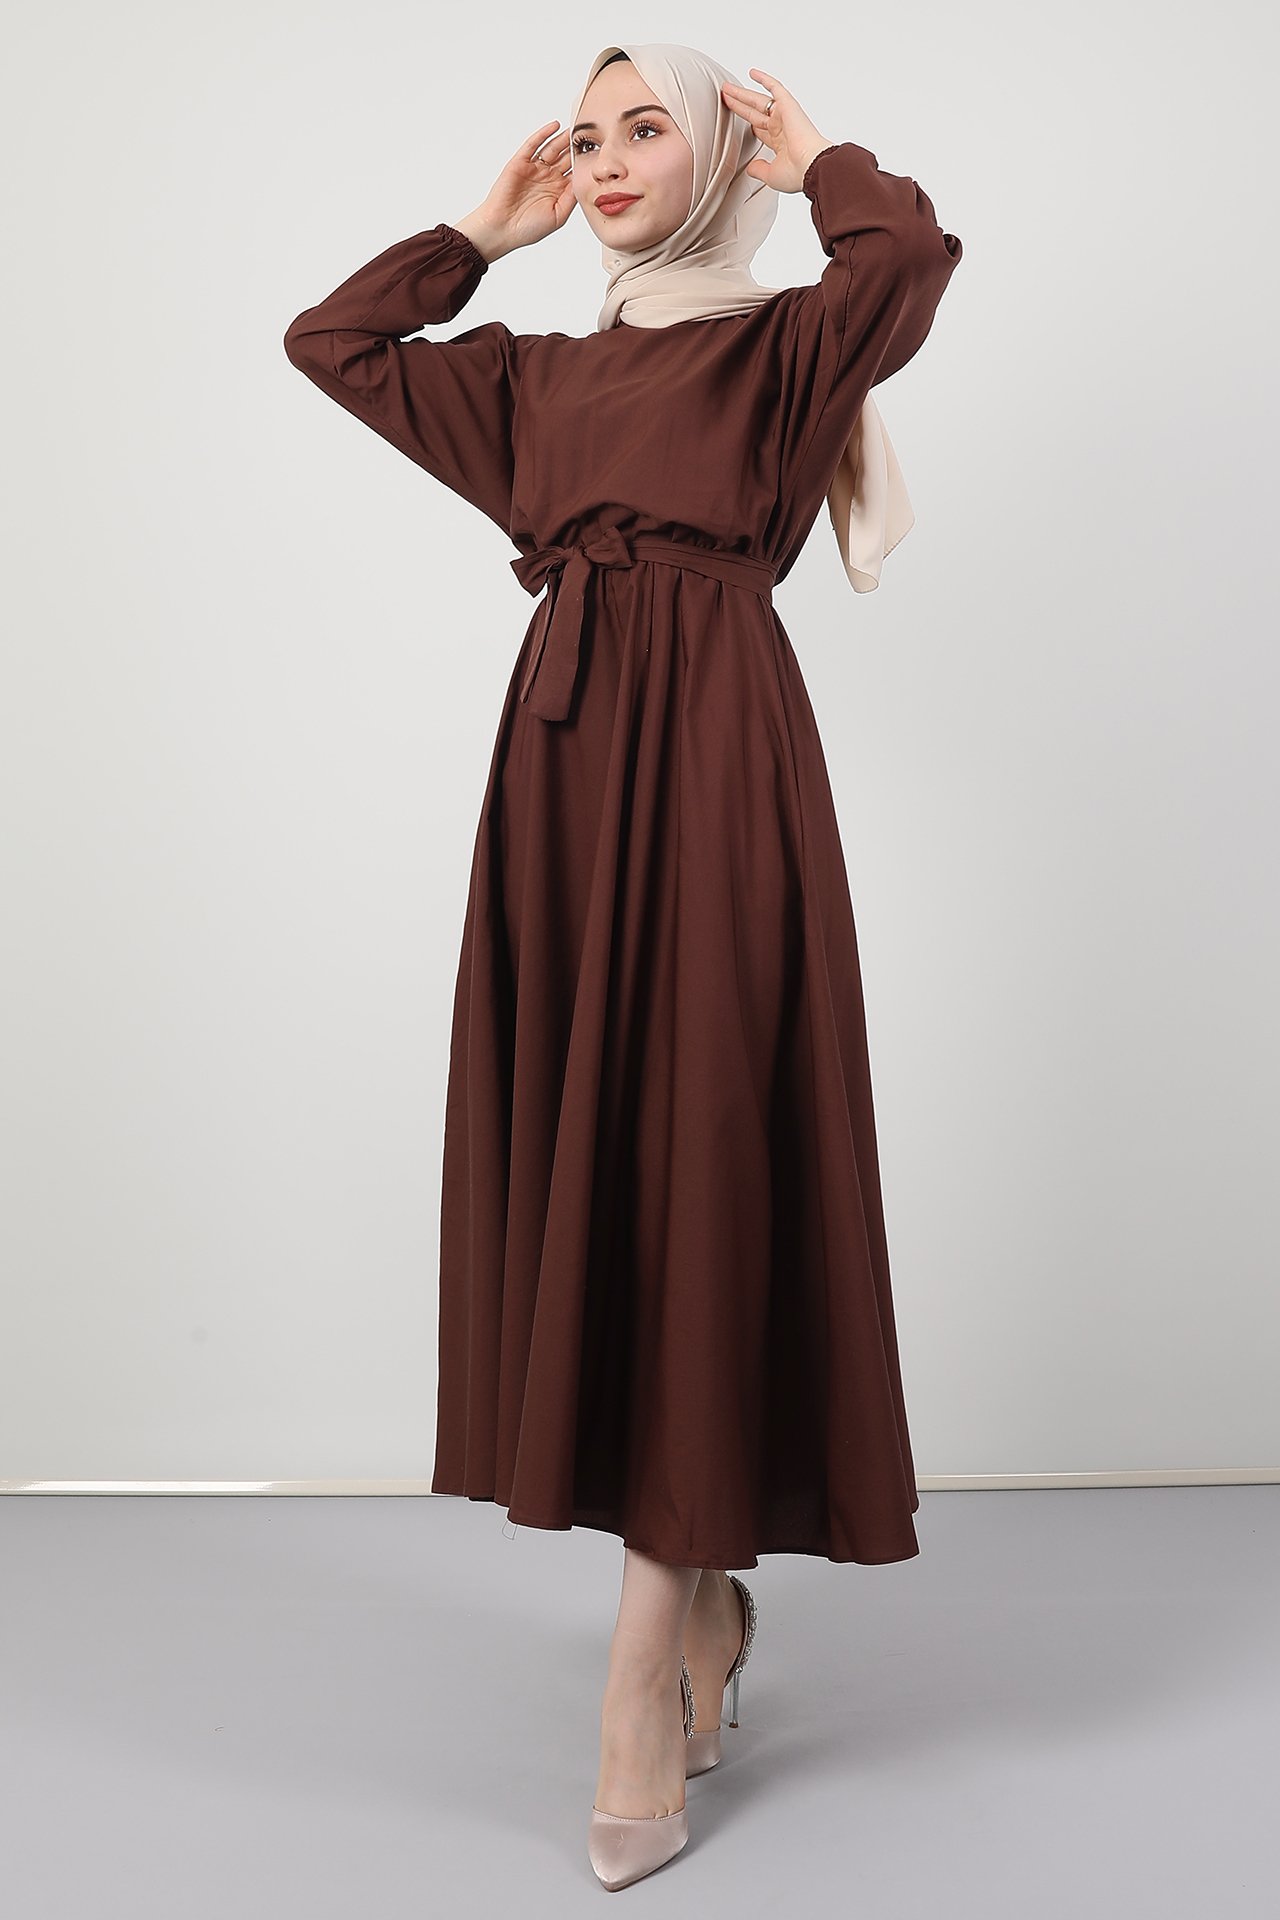 GİZAGİYİM - Giza Beli Lastikli Kloş Tesettür Elbise Kahverengi